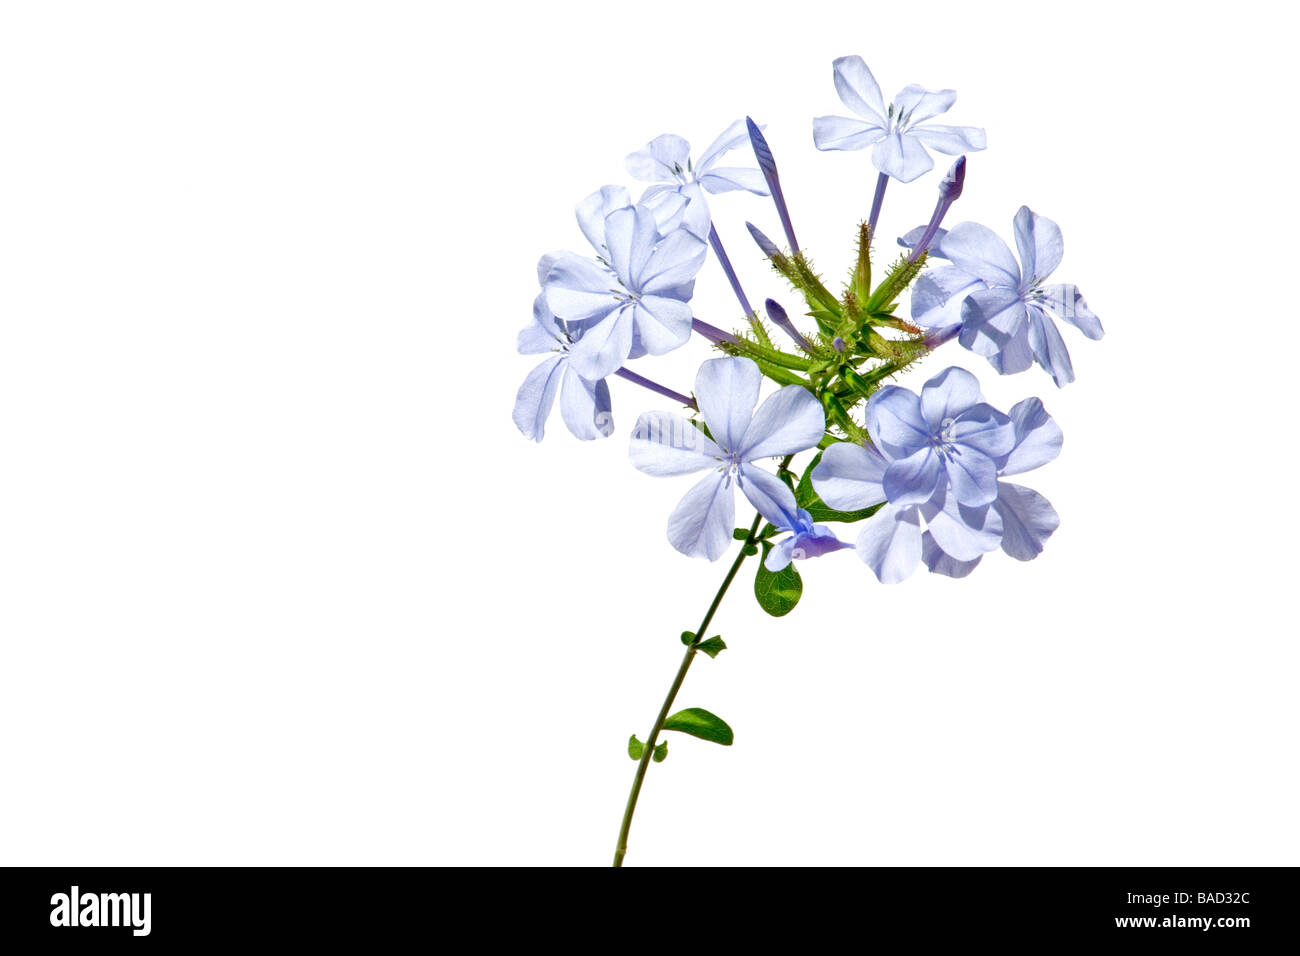 Close-up of blue jasmine on white background Stock Photo